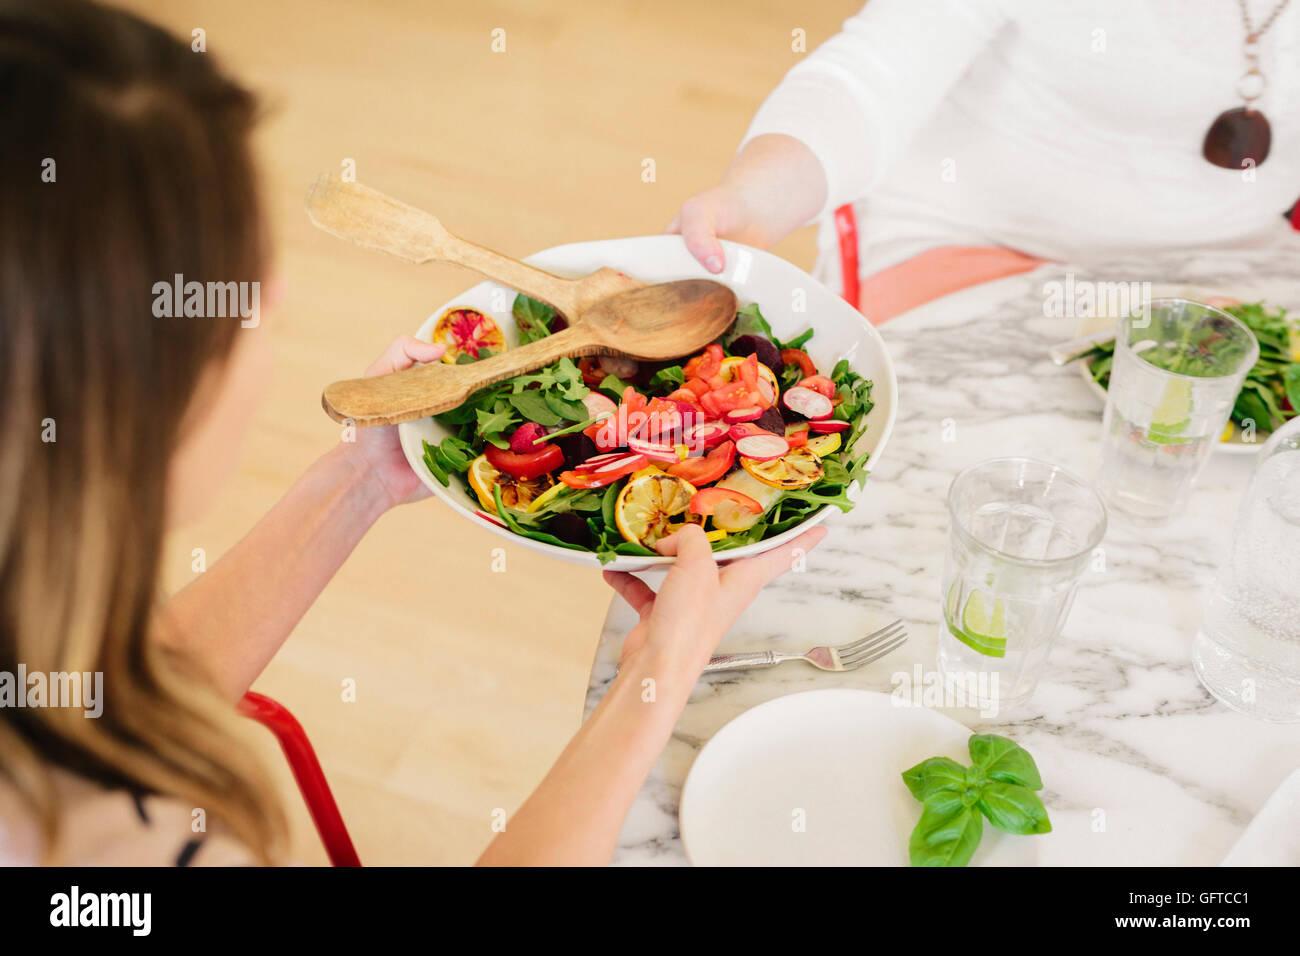 Ansicht von oben eine Tabelle mit Besteck und Teller von zubereiteten Speisen eine Frau hält einen Salatteller gelegt Stockfoto